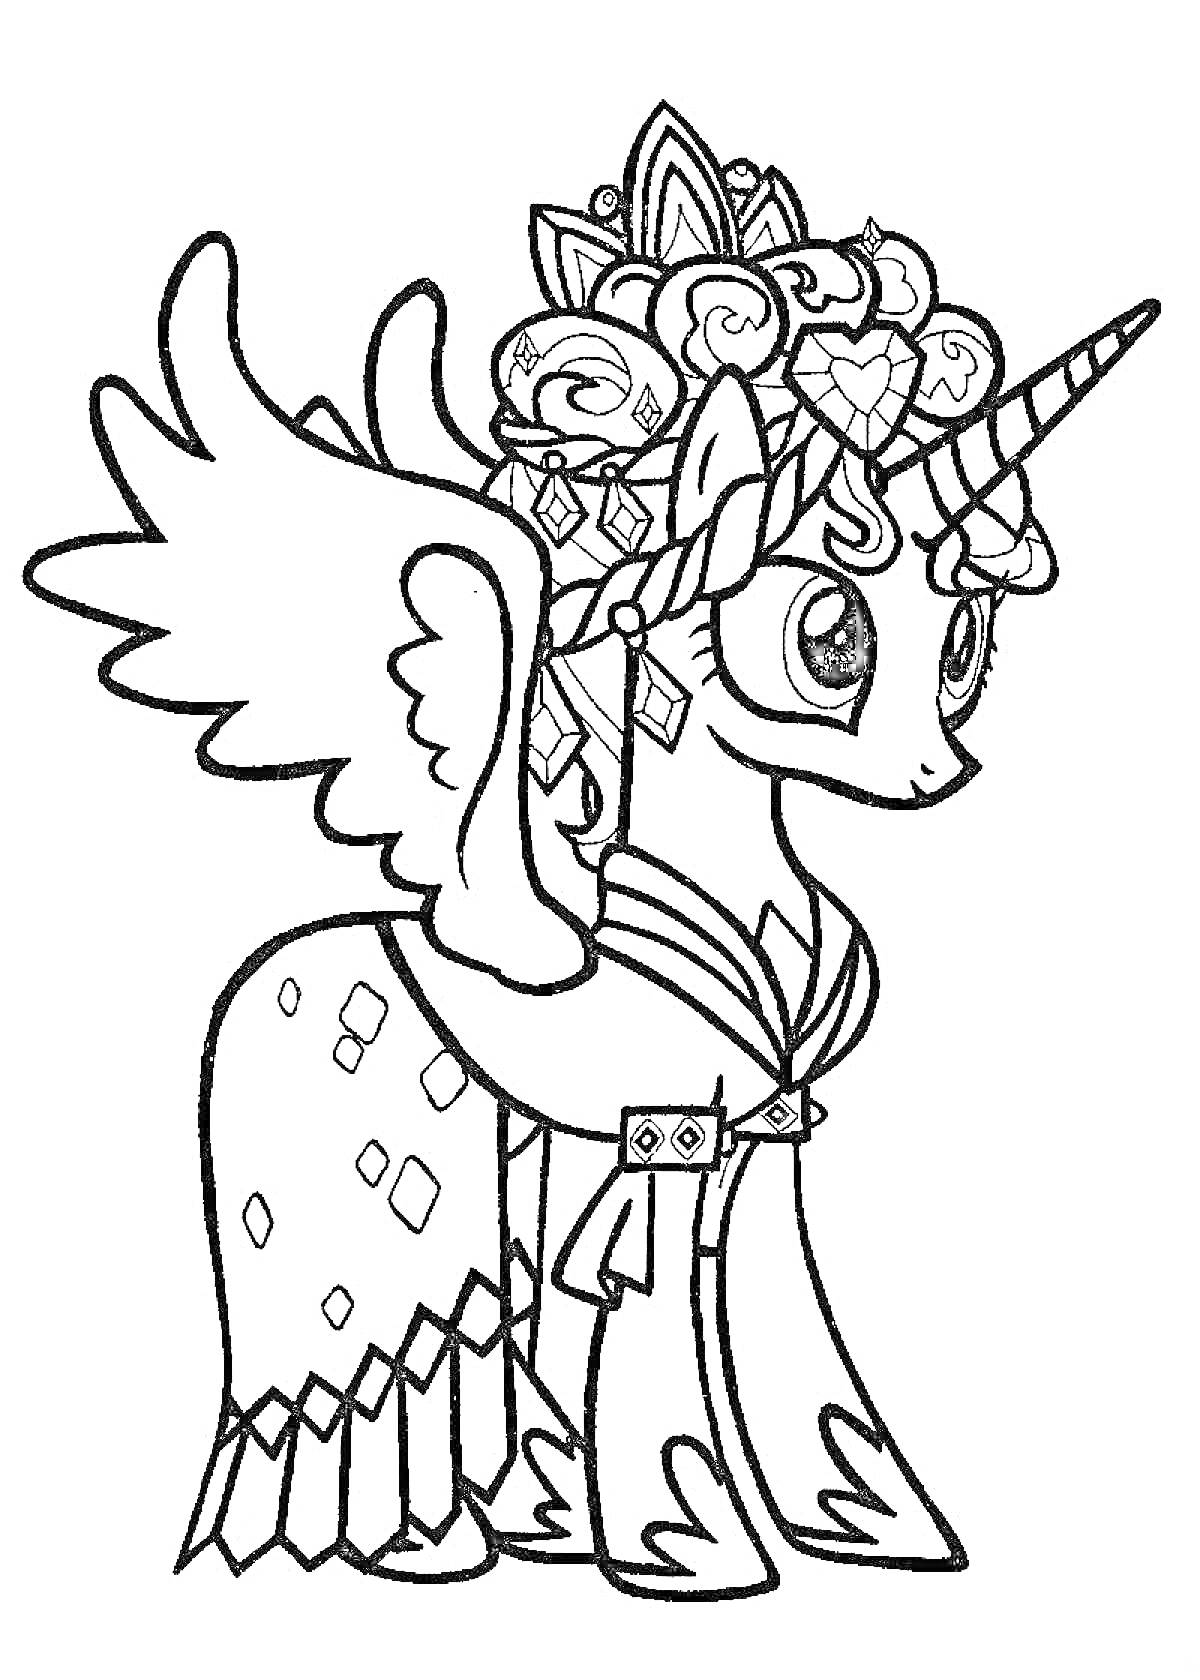 Раскраска Пони Каденс с рогом, крыльями, и украшениями на голове и теле